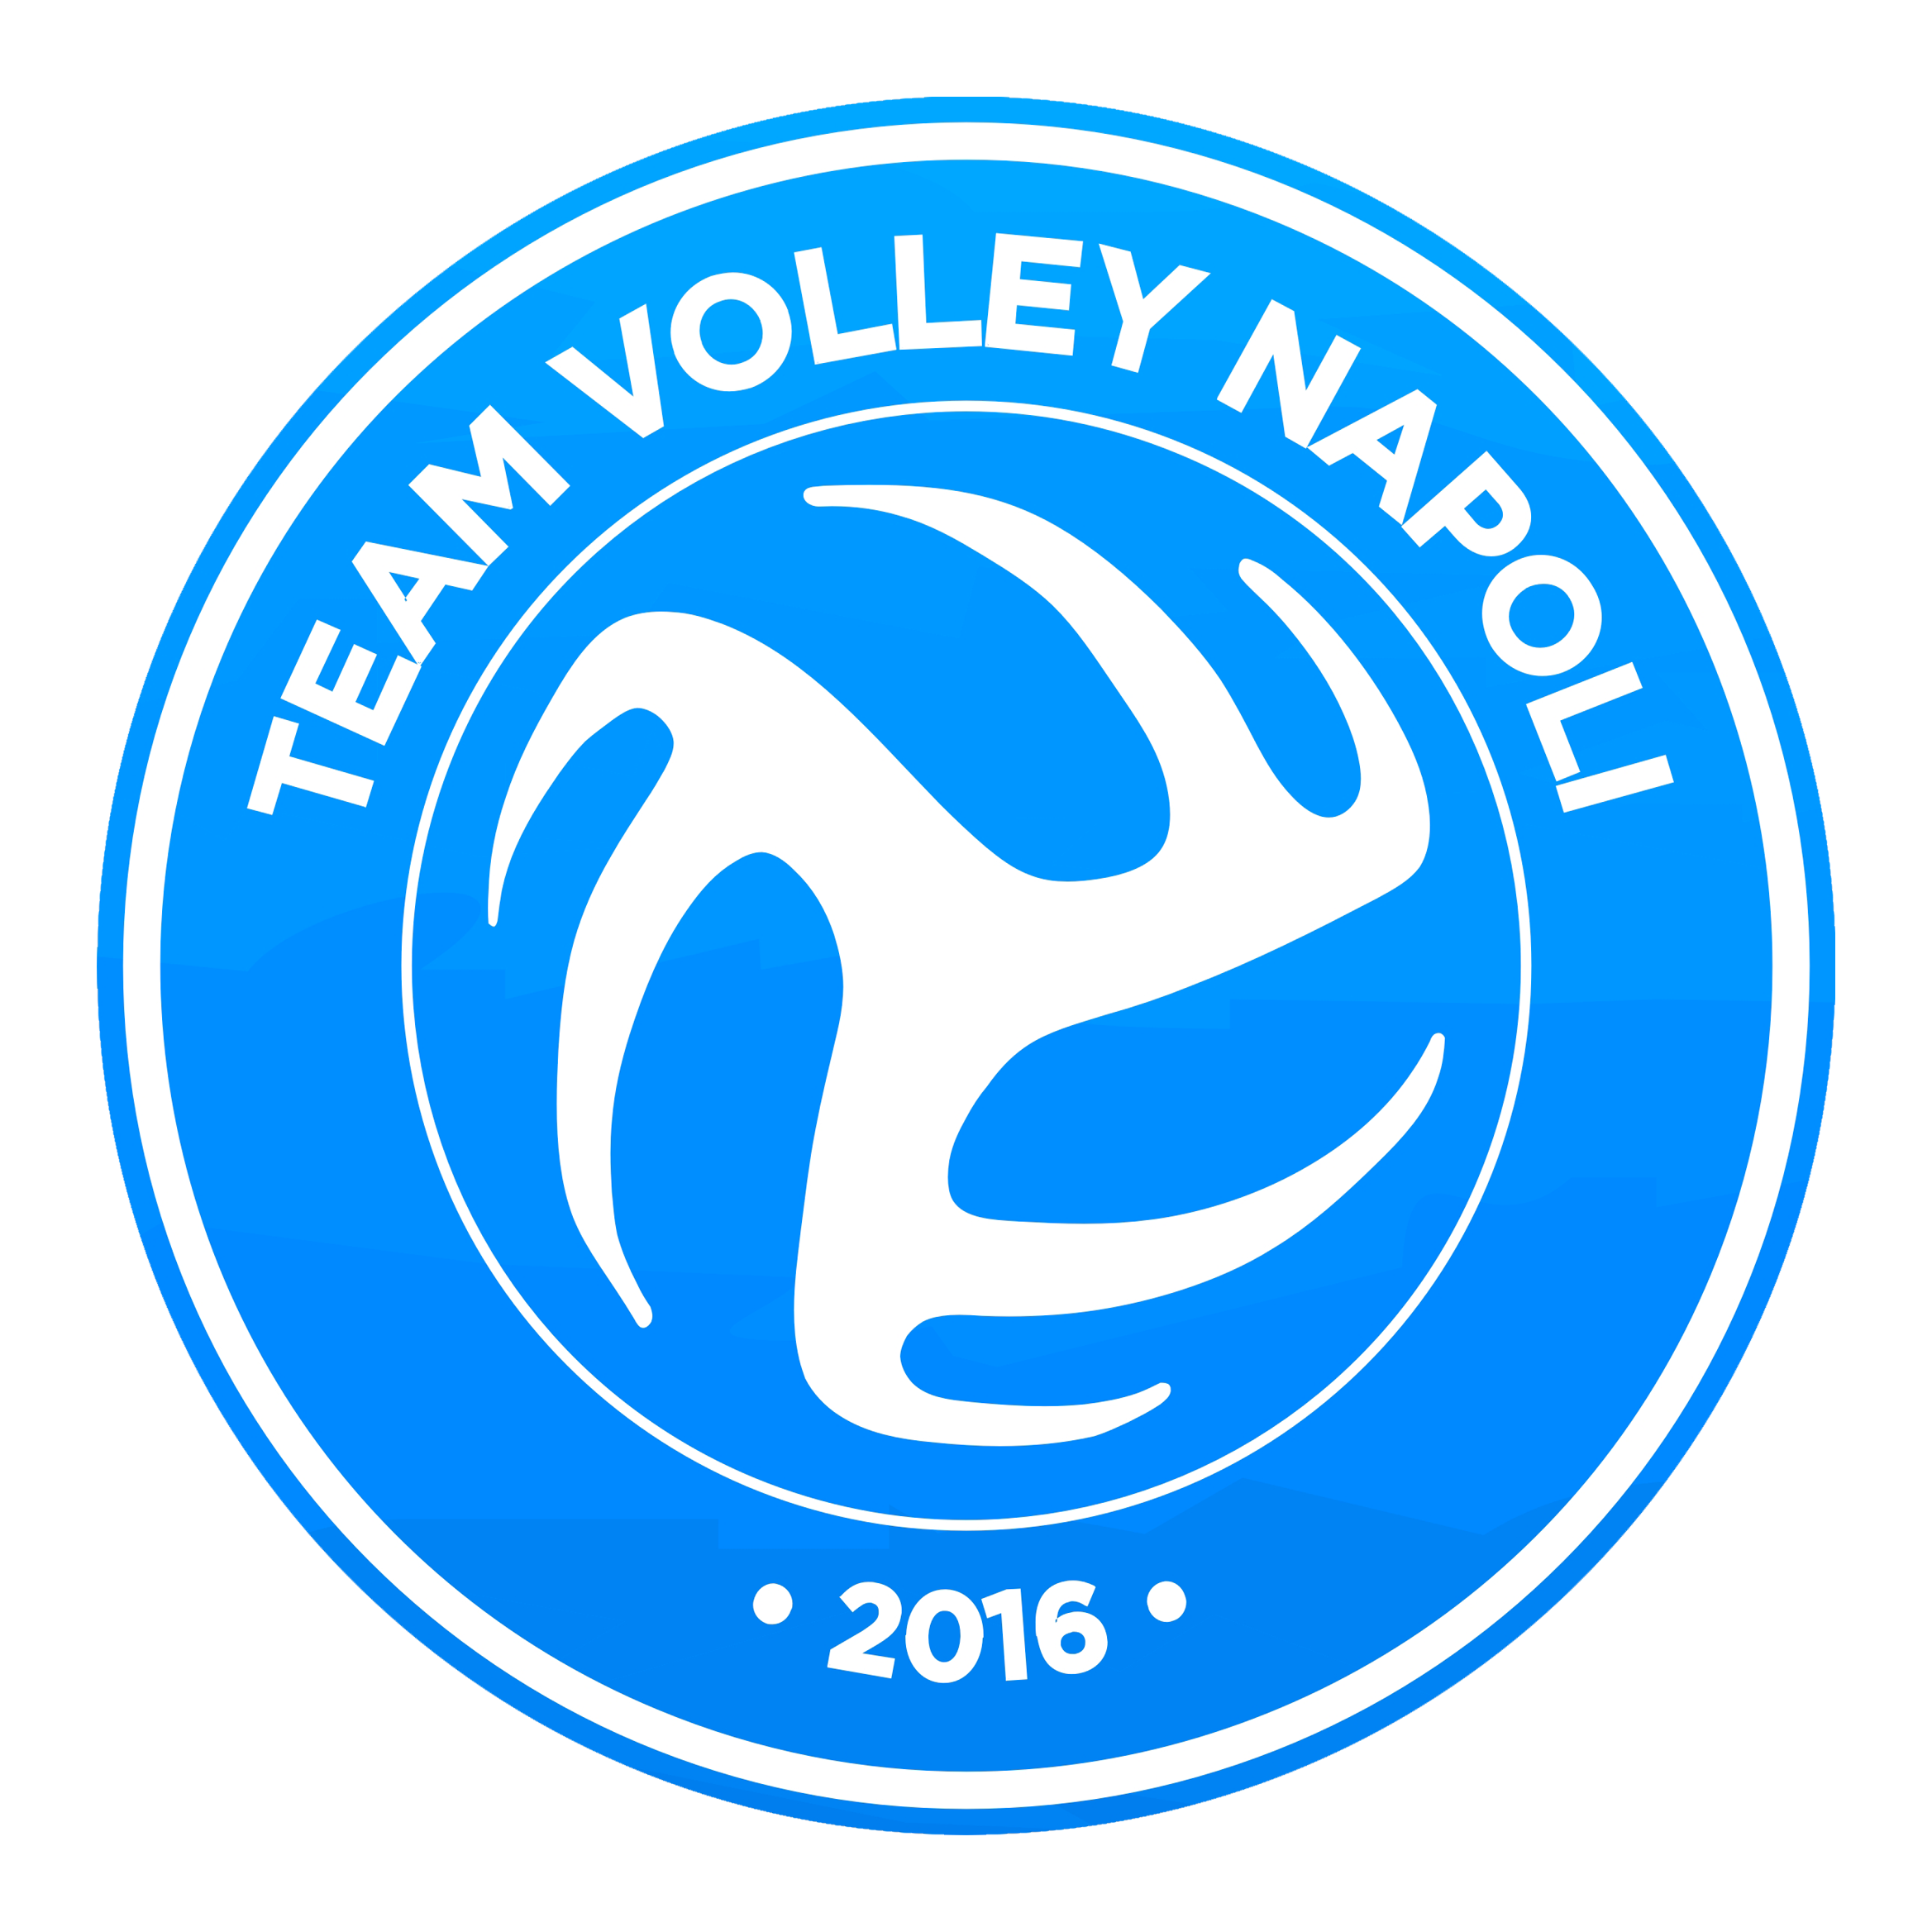 Team Volley Napoli